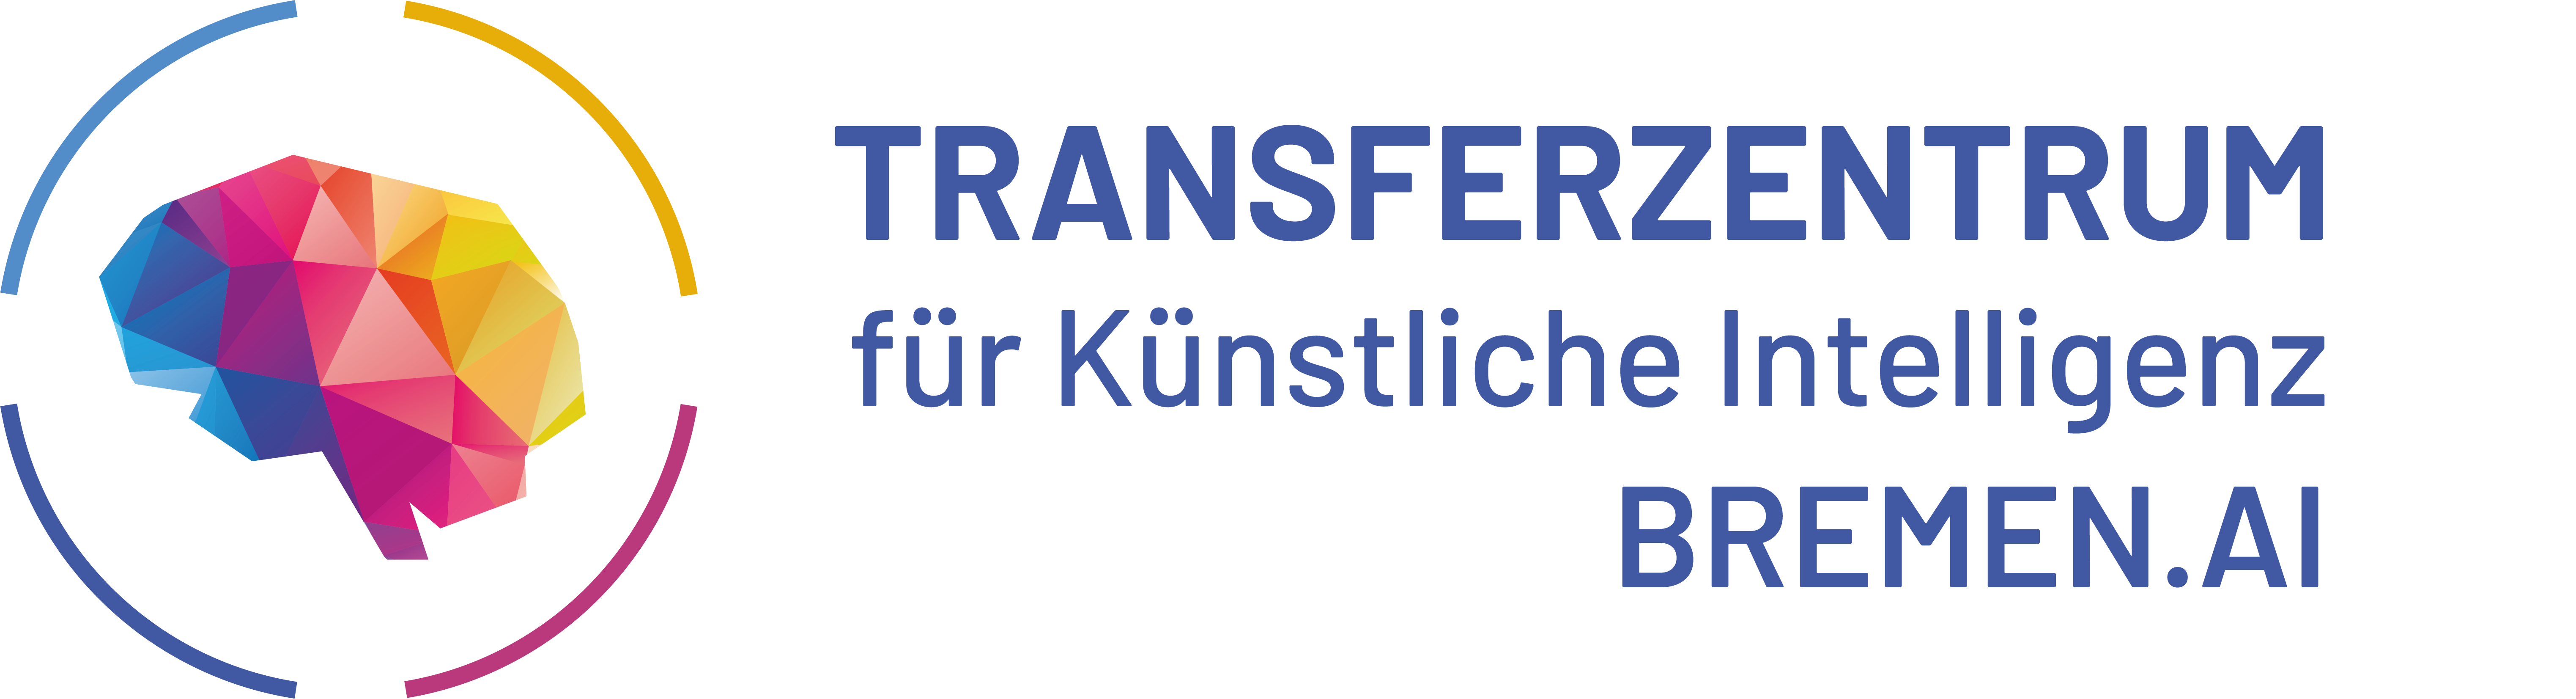 Transferzentrum für künstliche Intelligenz Bremen.AI